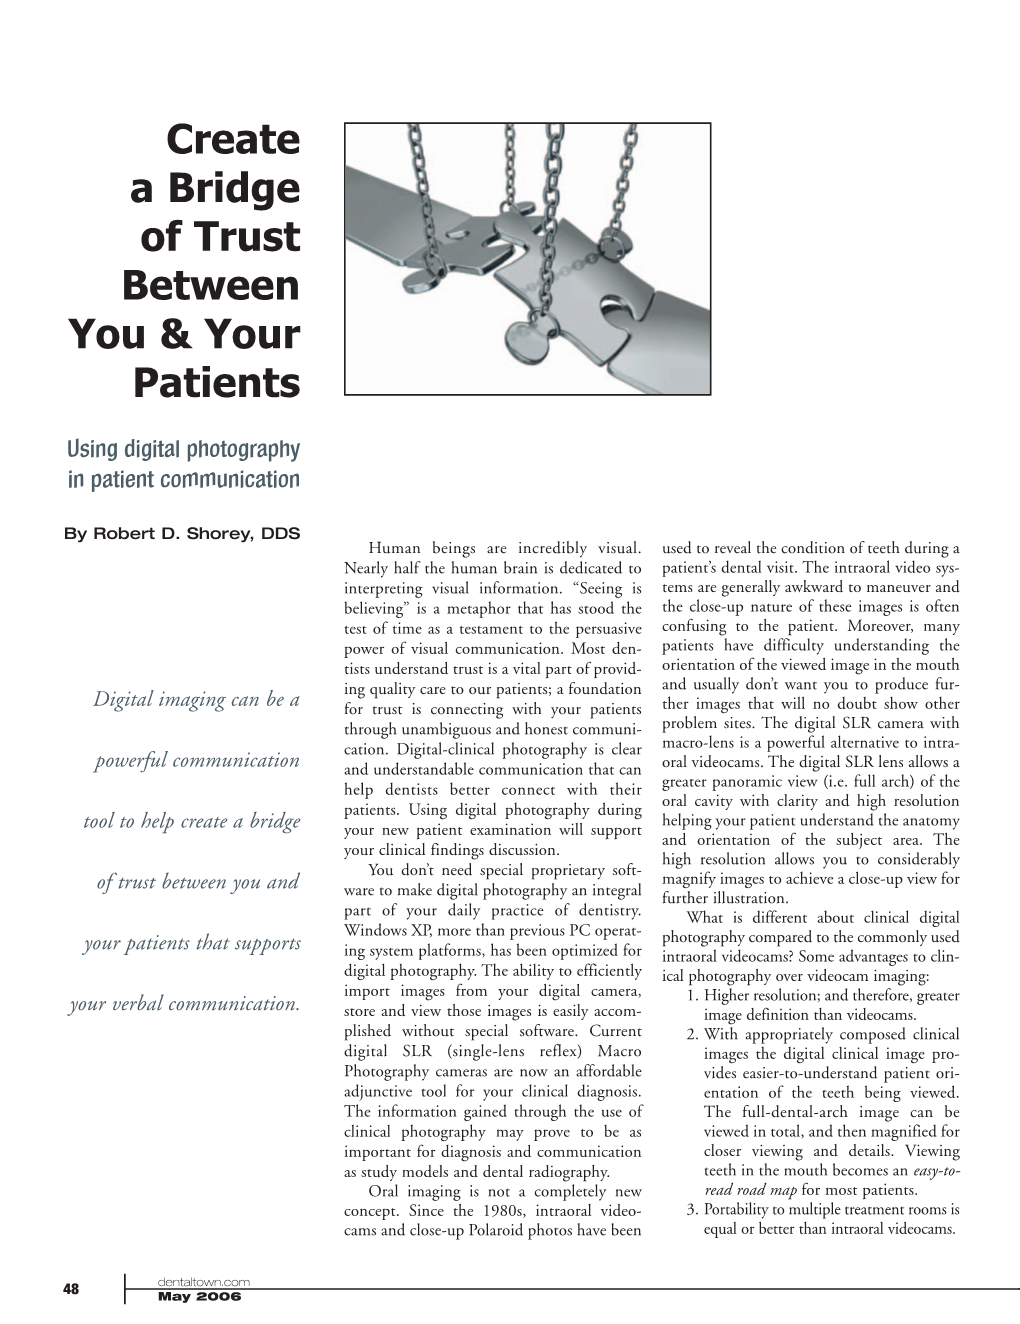 Create a Bridge of Trust Between You & Your Patients